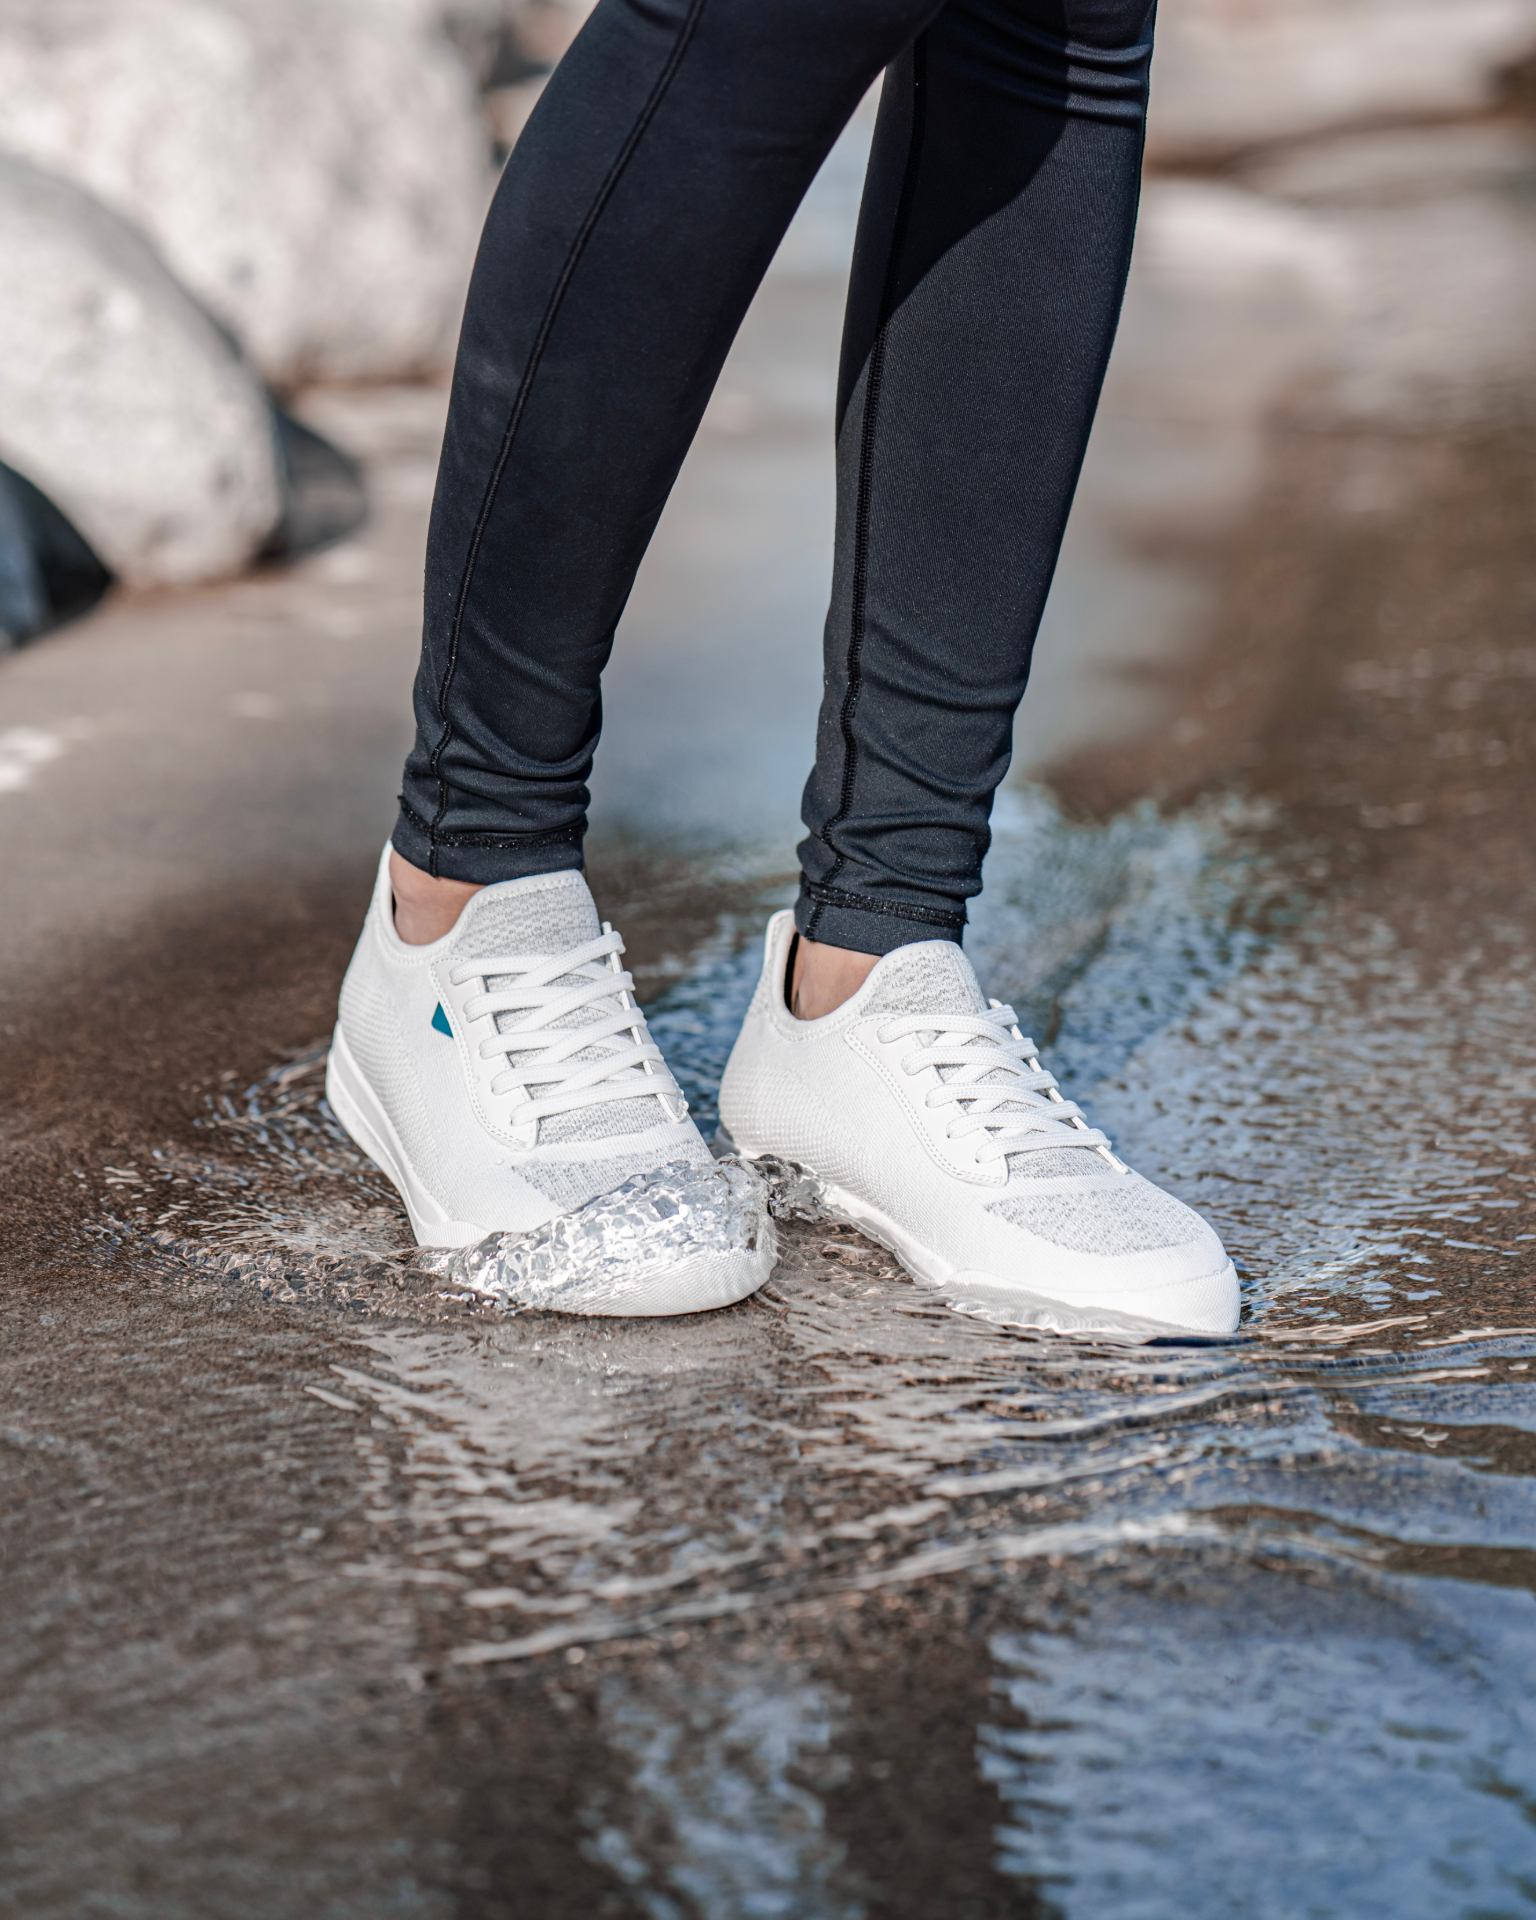 Are Vegan Sneakers Waterproof?